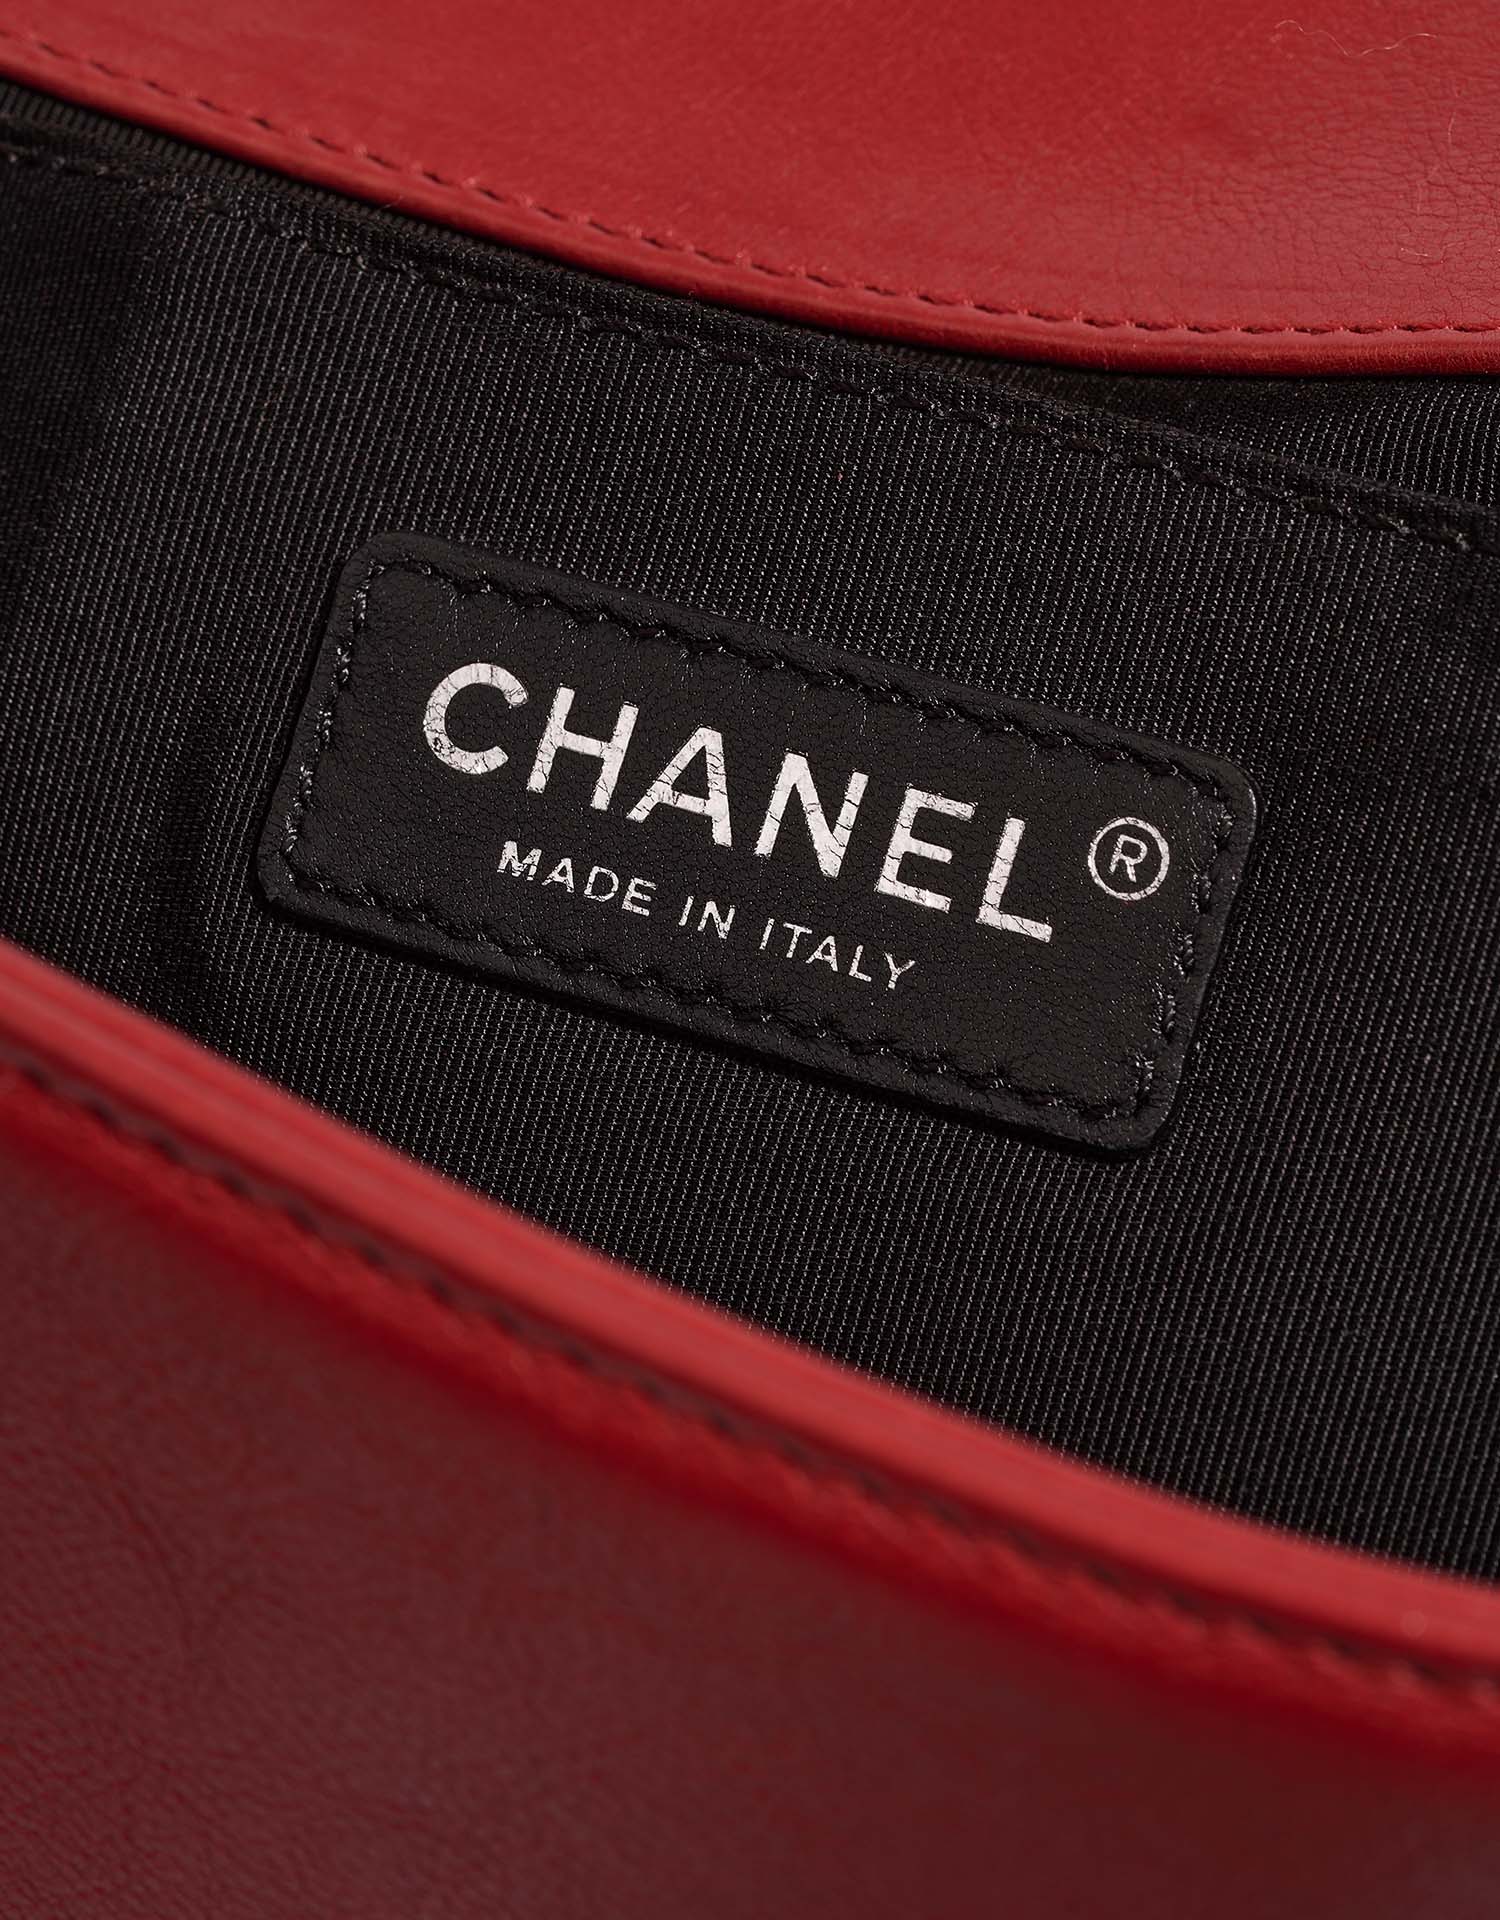 Chanel Boy OldMedium Red Logo | Verkaufen Sie Ihre Designer-Tasche auf Saclab.com